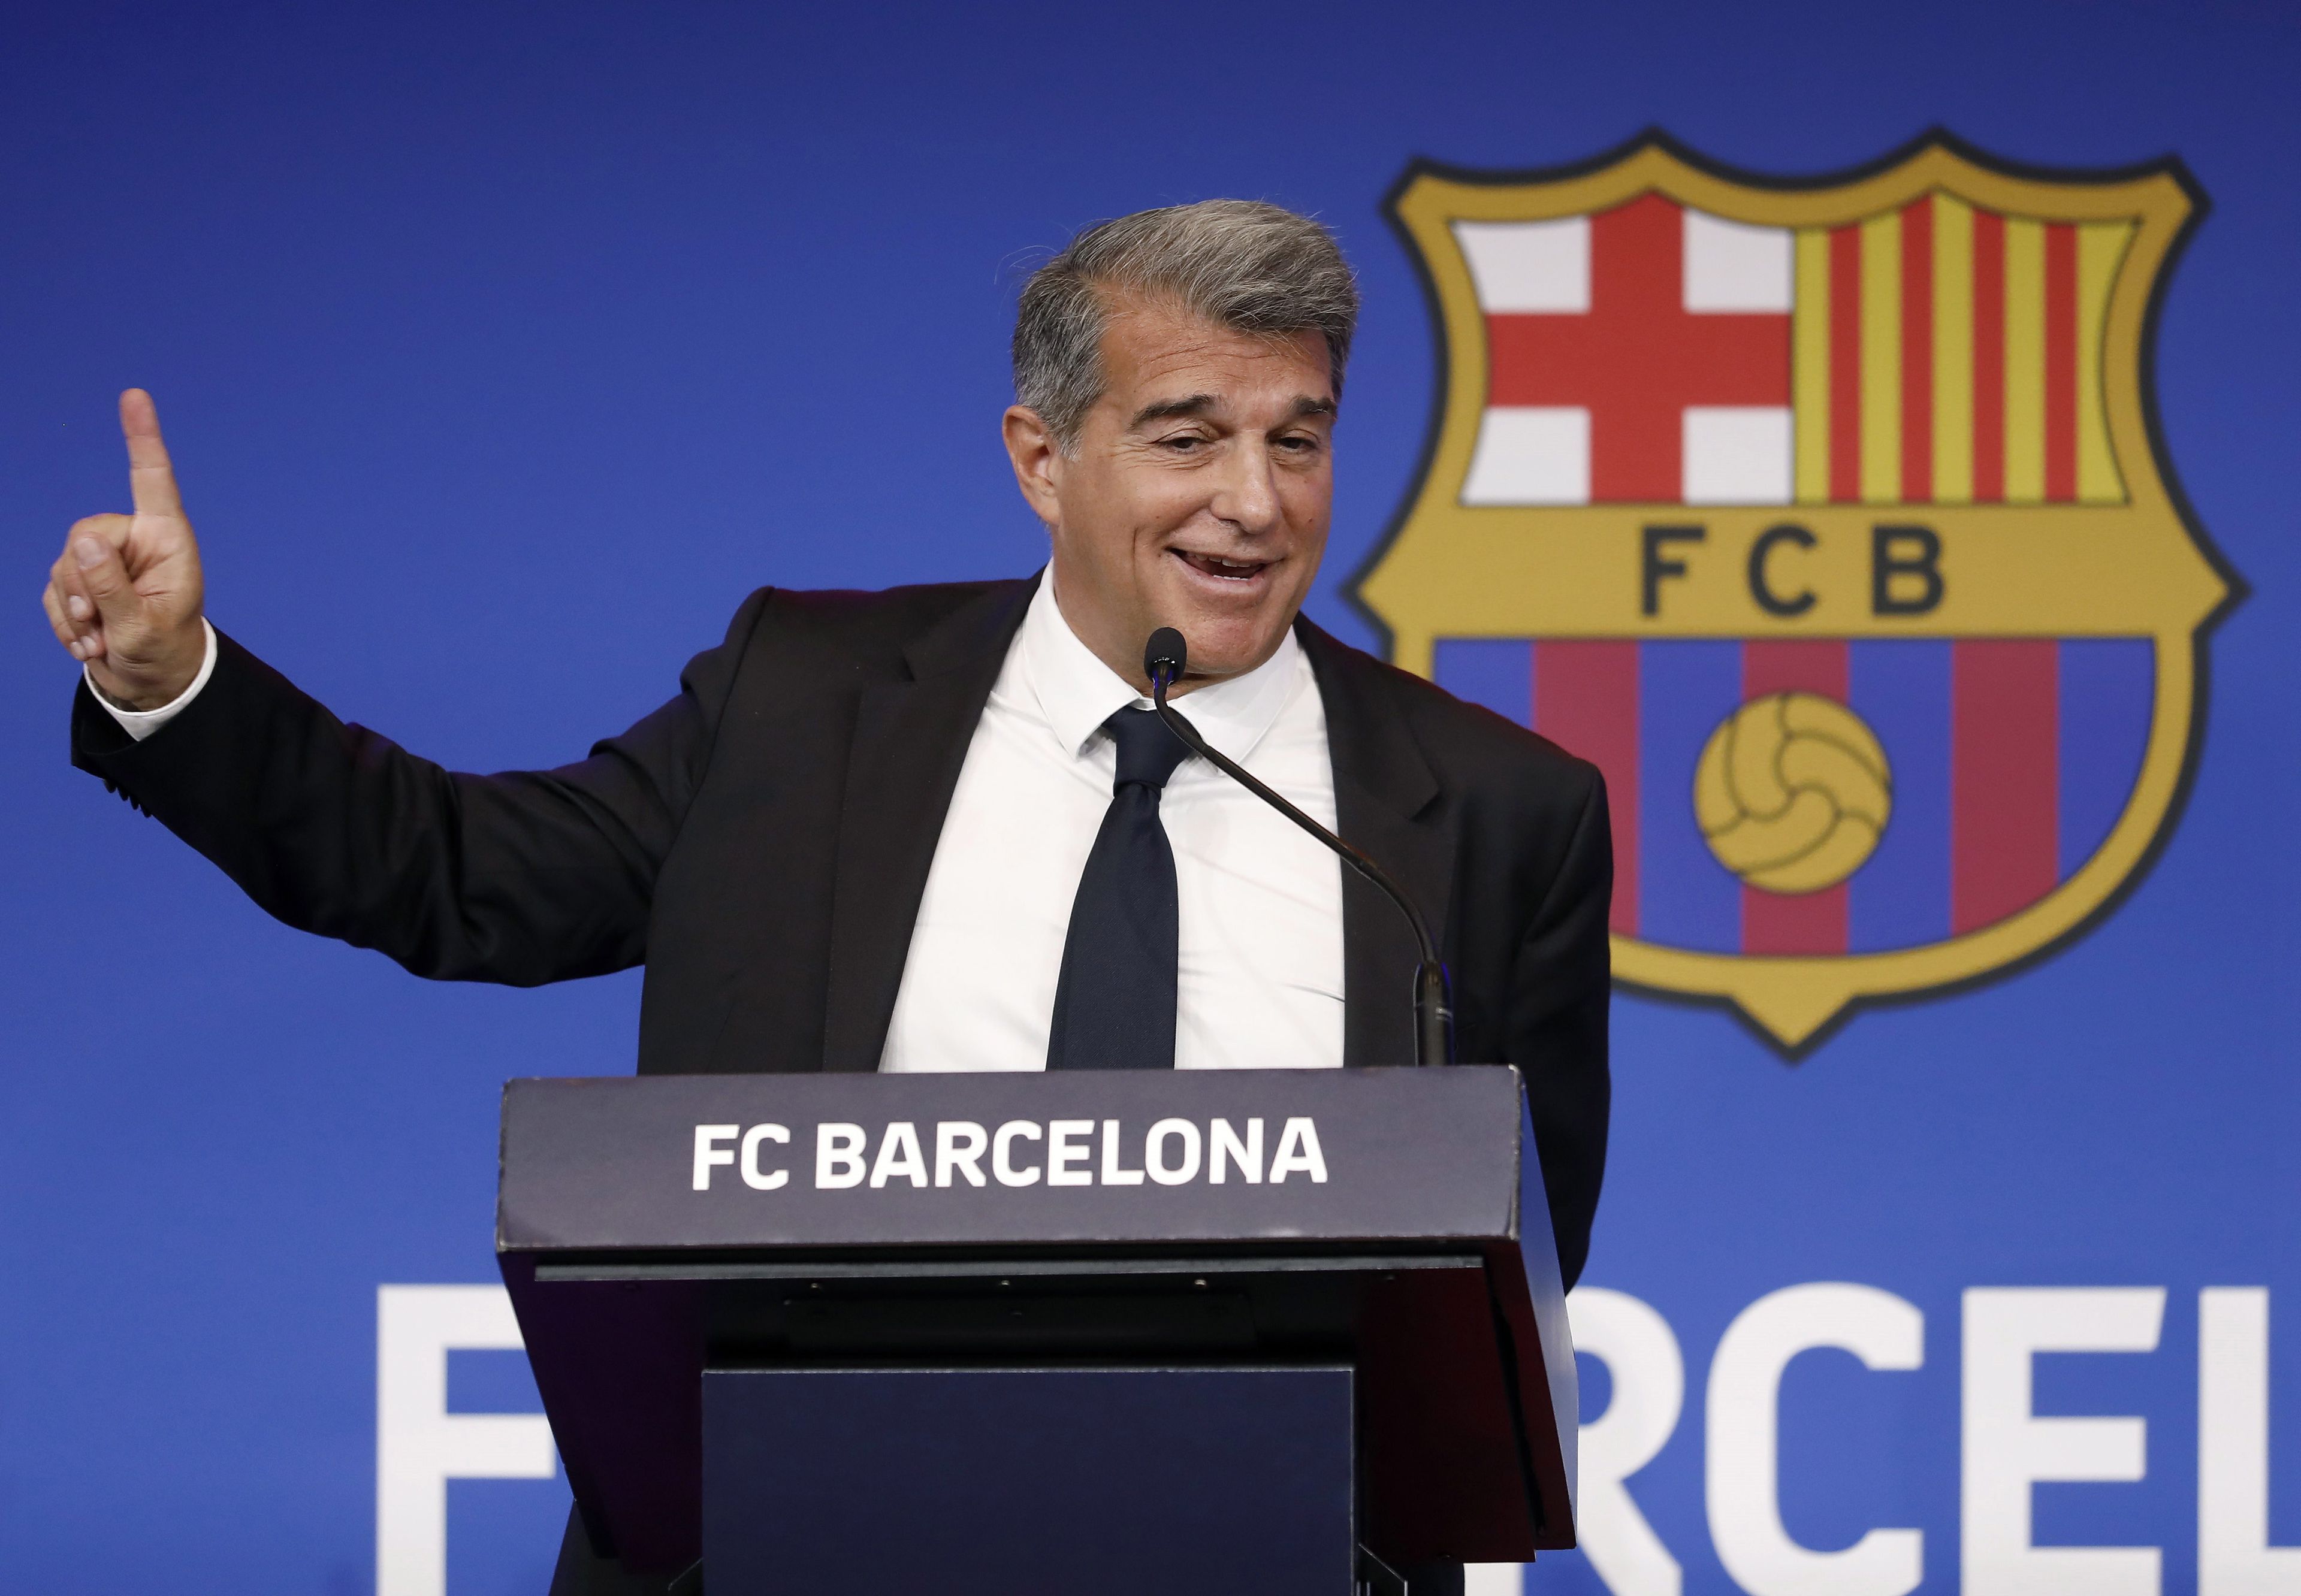 Joan Laporta, a Barcelona spanyol labdarúgóklub elnöke a márciusi megválasztása utáni első sajtóértekezletét tartja Barcelonában 2021. május 28-án / Fotó: MTI/EPA/EFE/Andreu Dalmau